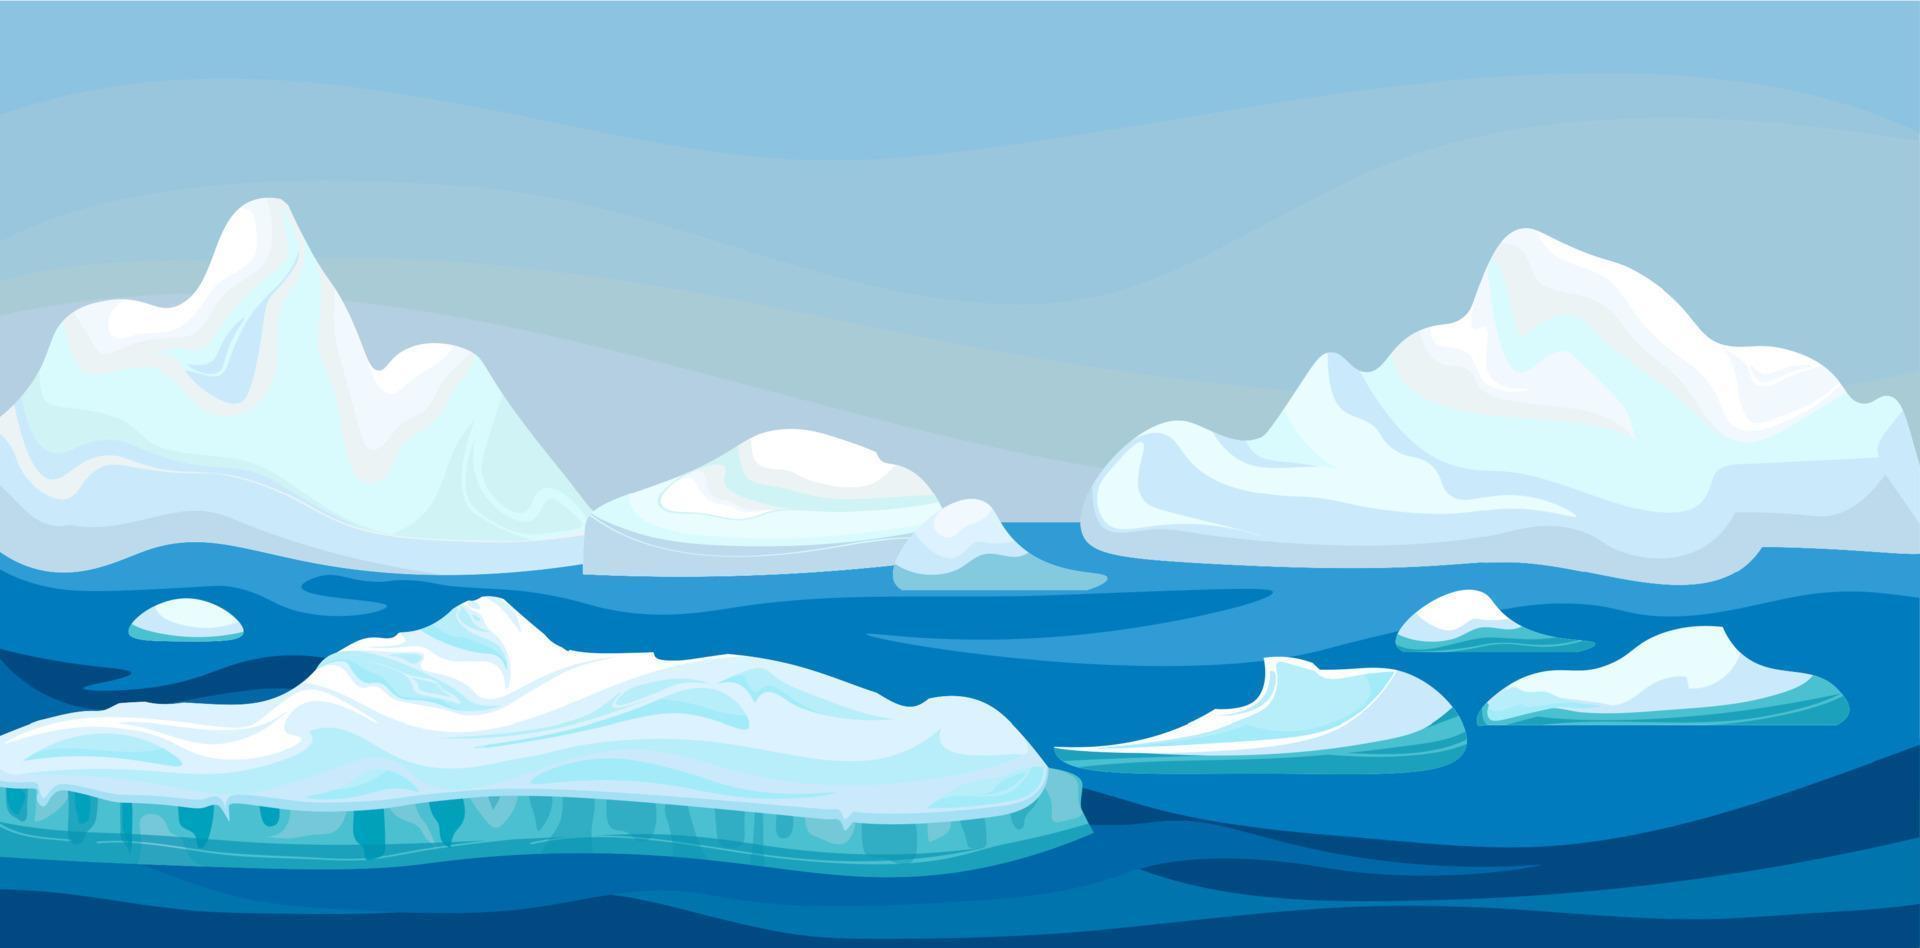 iceberg ártico dos desenhos animados com mar azul, paisagem de inverno. cena jogo conceito oceano ártico e montanhas de neve. ilustração de fundo vector natureza.